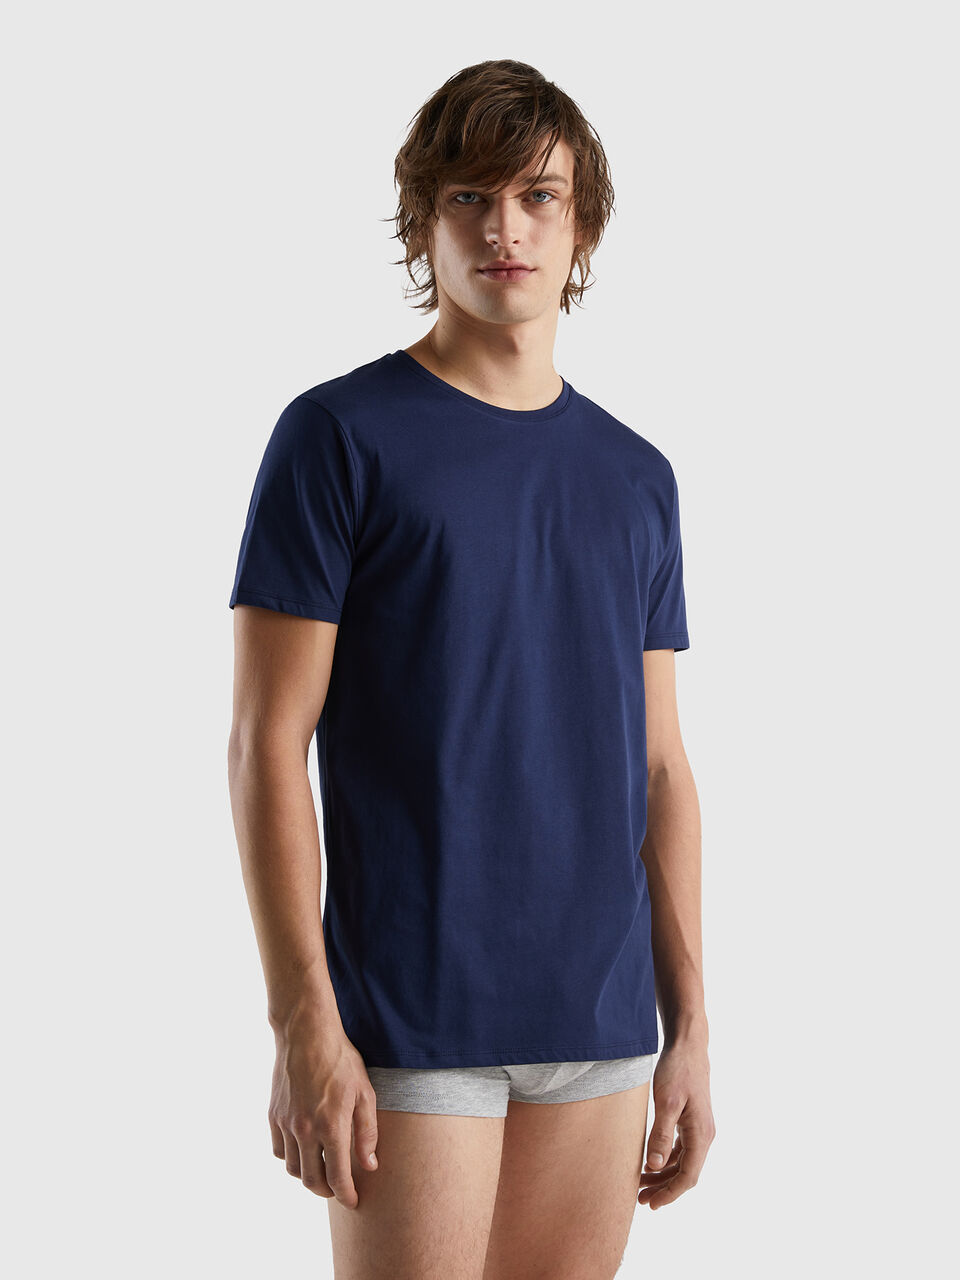 Long Dark - Blue cotton fiber | t-shirt Benetton